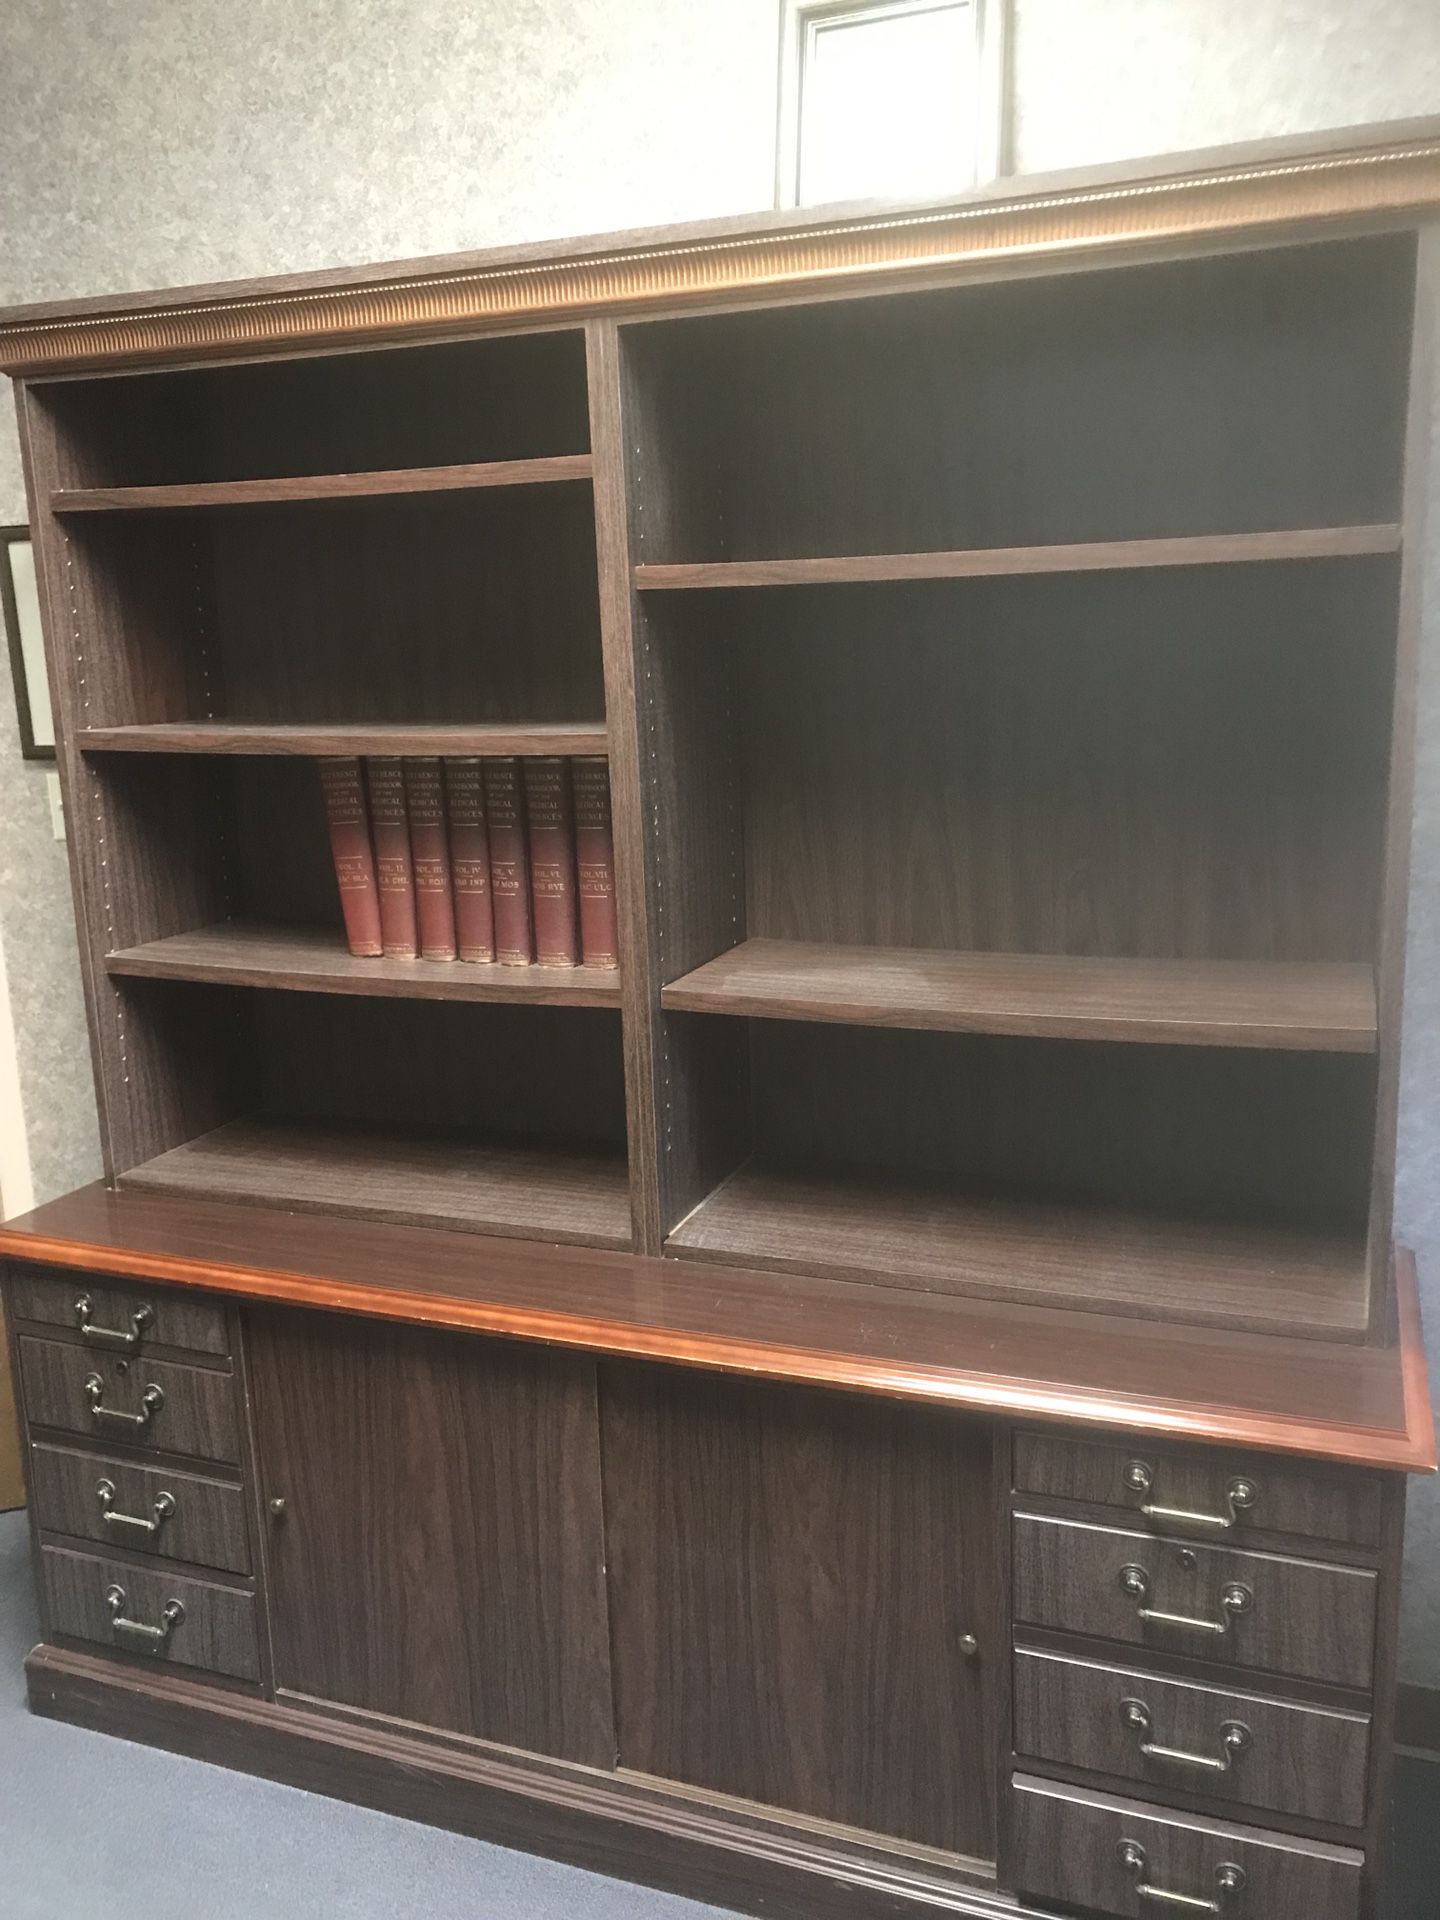 Bookshelves and Desk $500 OBO